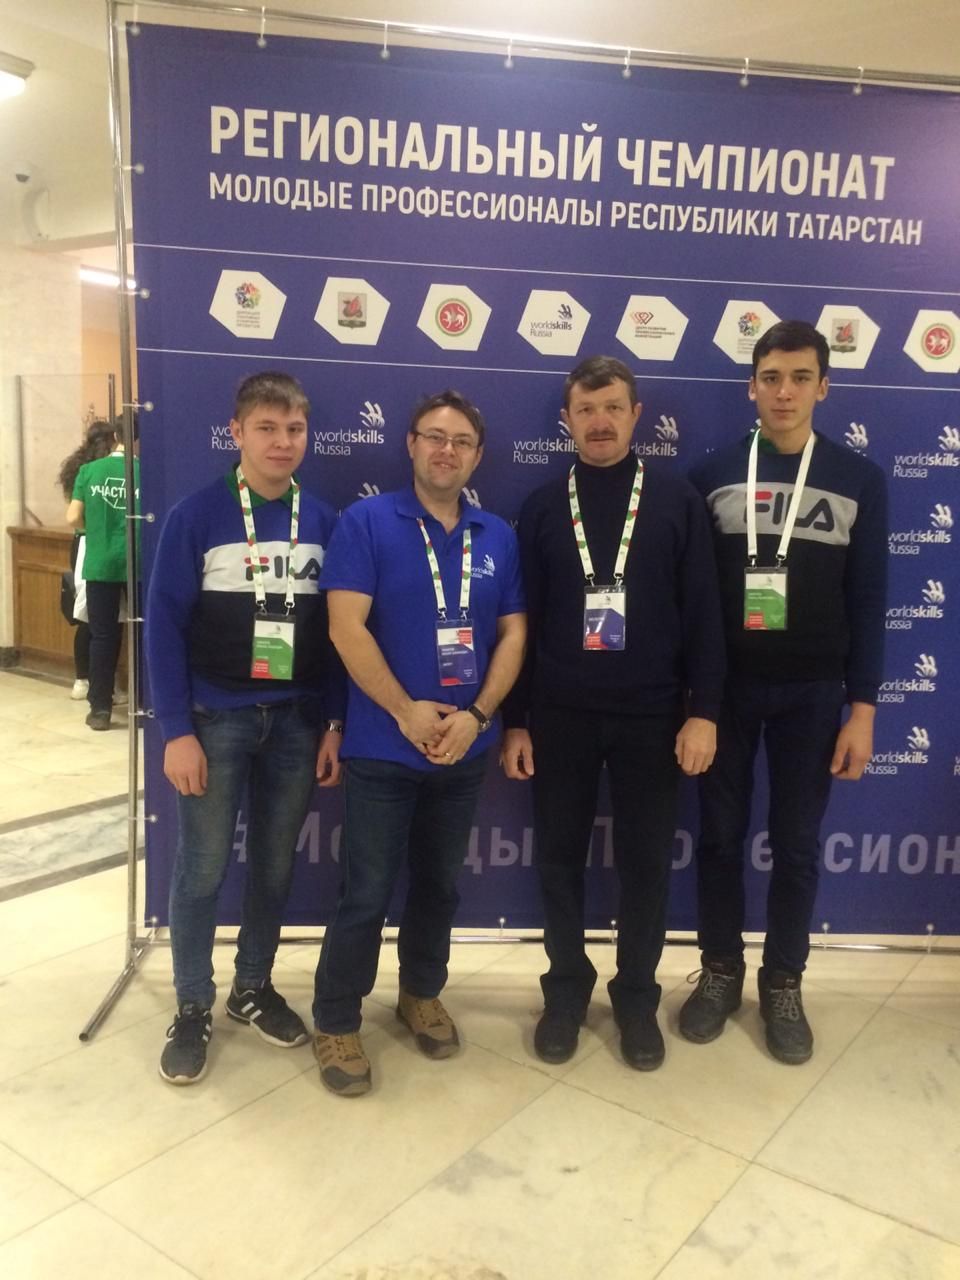 Ученики МБОУ «Лесхозская СОШ» на региональном чемпионате Worldskils Russia